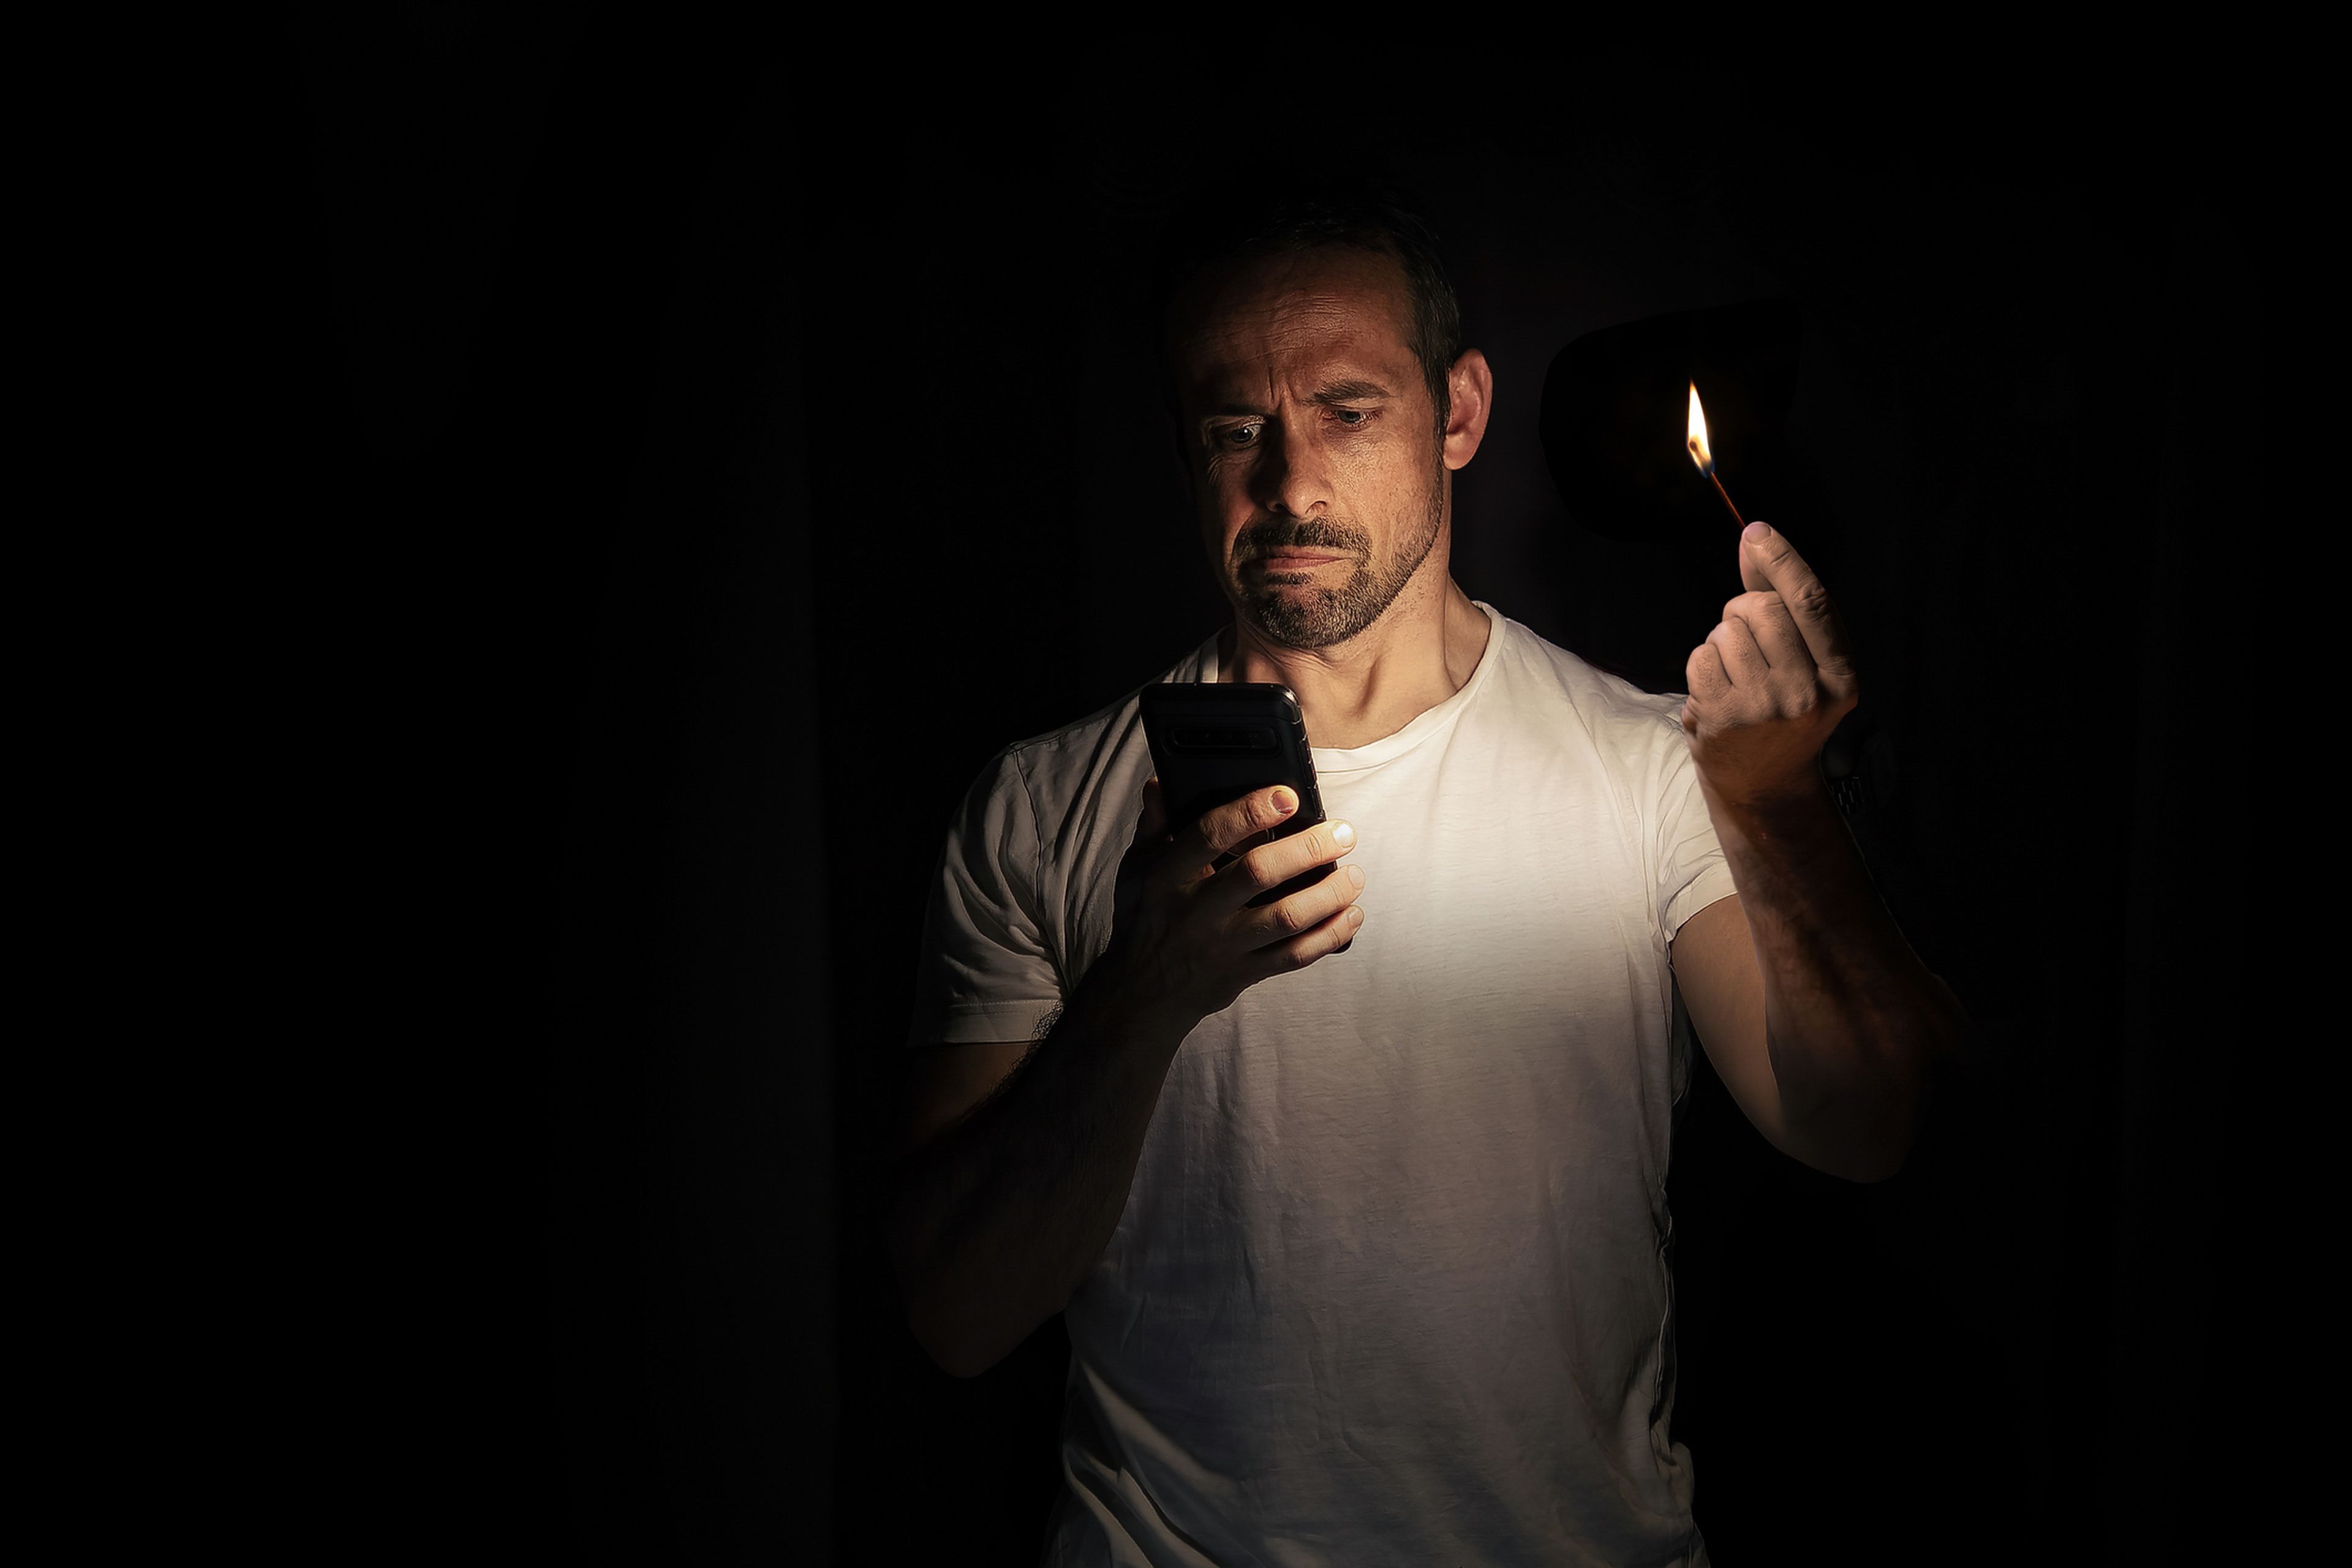 Un hombre mira el móvil, iluminándose con una cerilla.